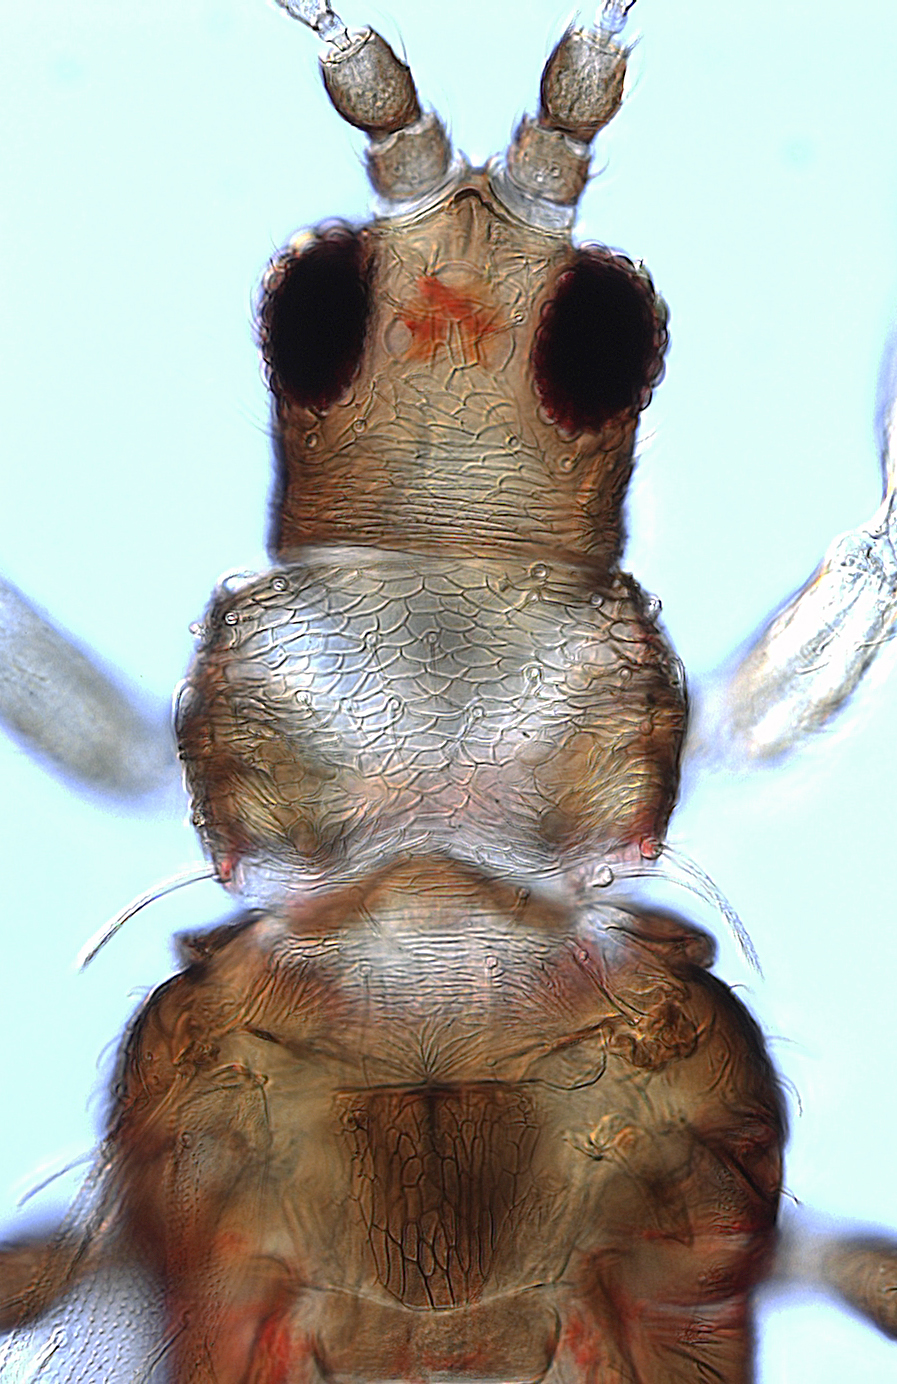 Echinothrips pinnatus